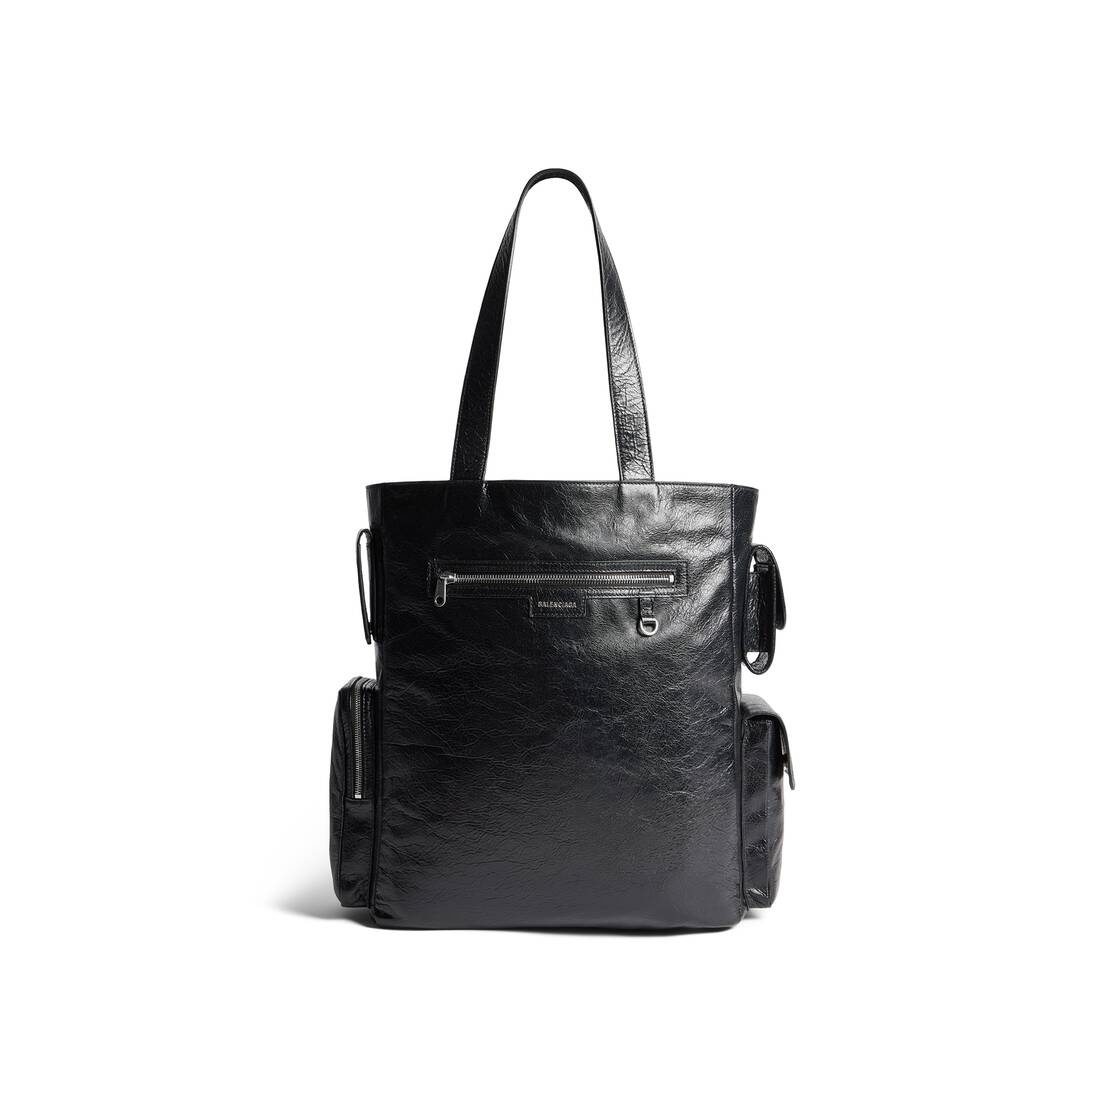 Men's Superbusy Tote Bag in Black - 6